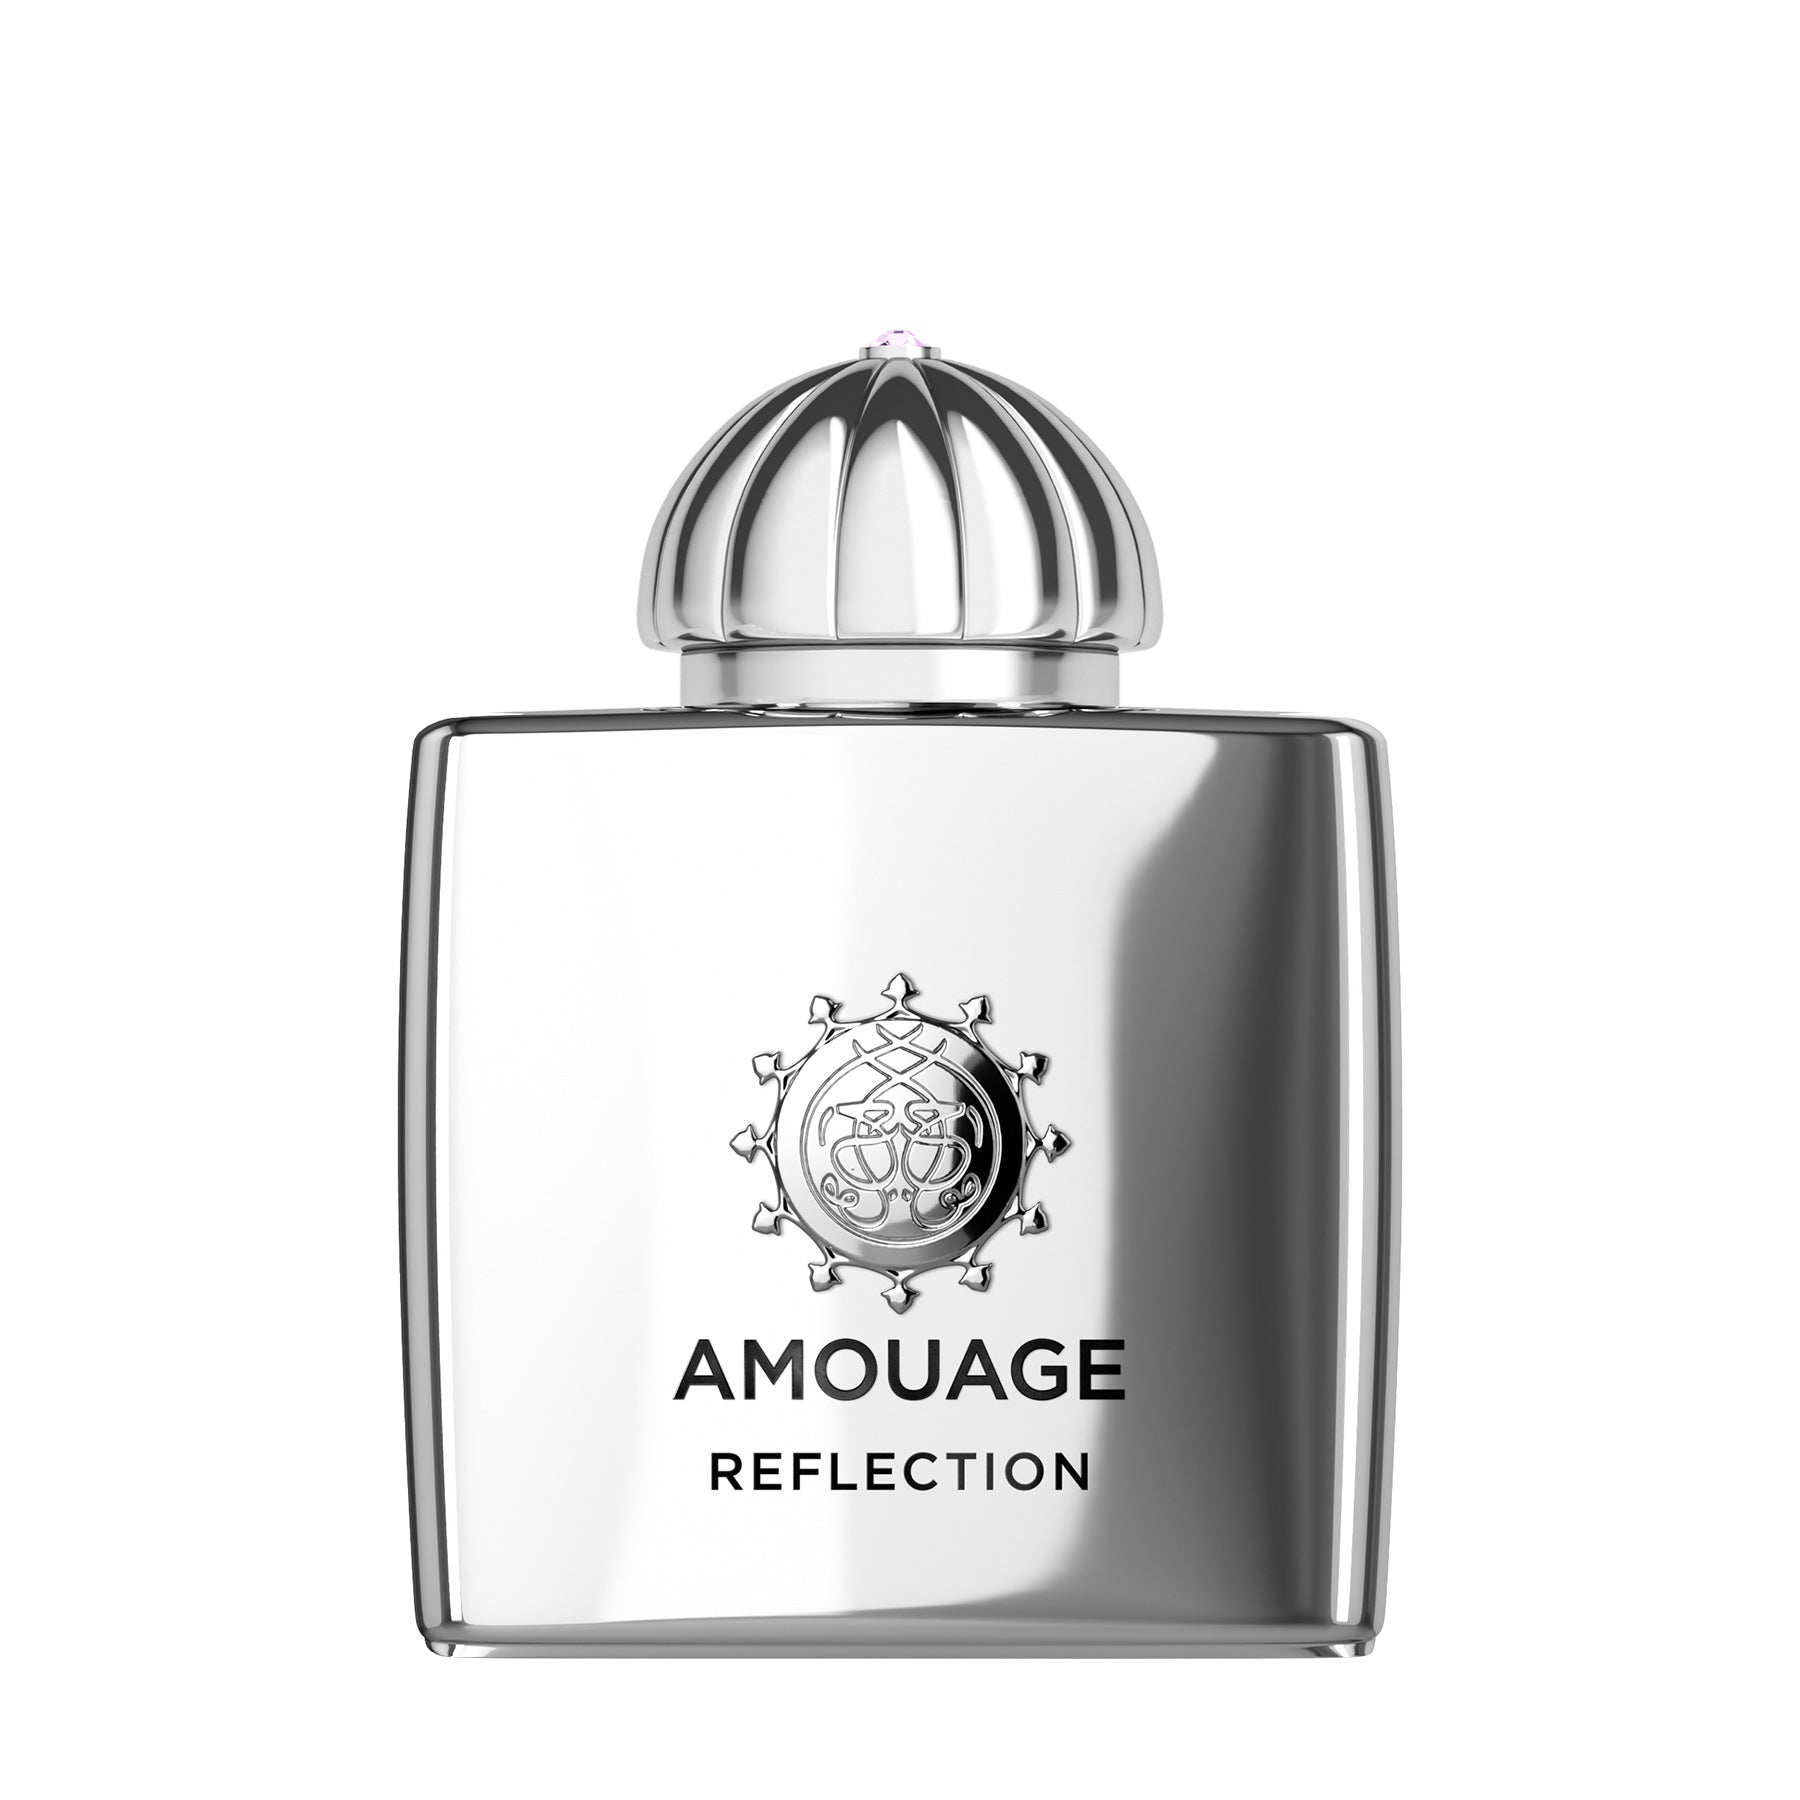 真に贅沢な香水 Amouage Vol.1 – 香水通販 NOSE SHOP